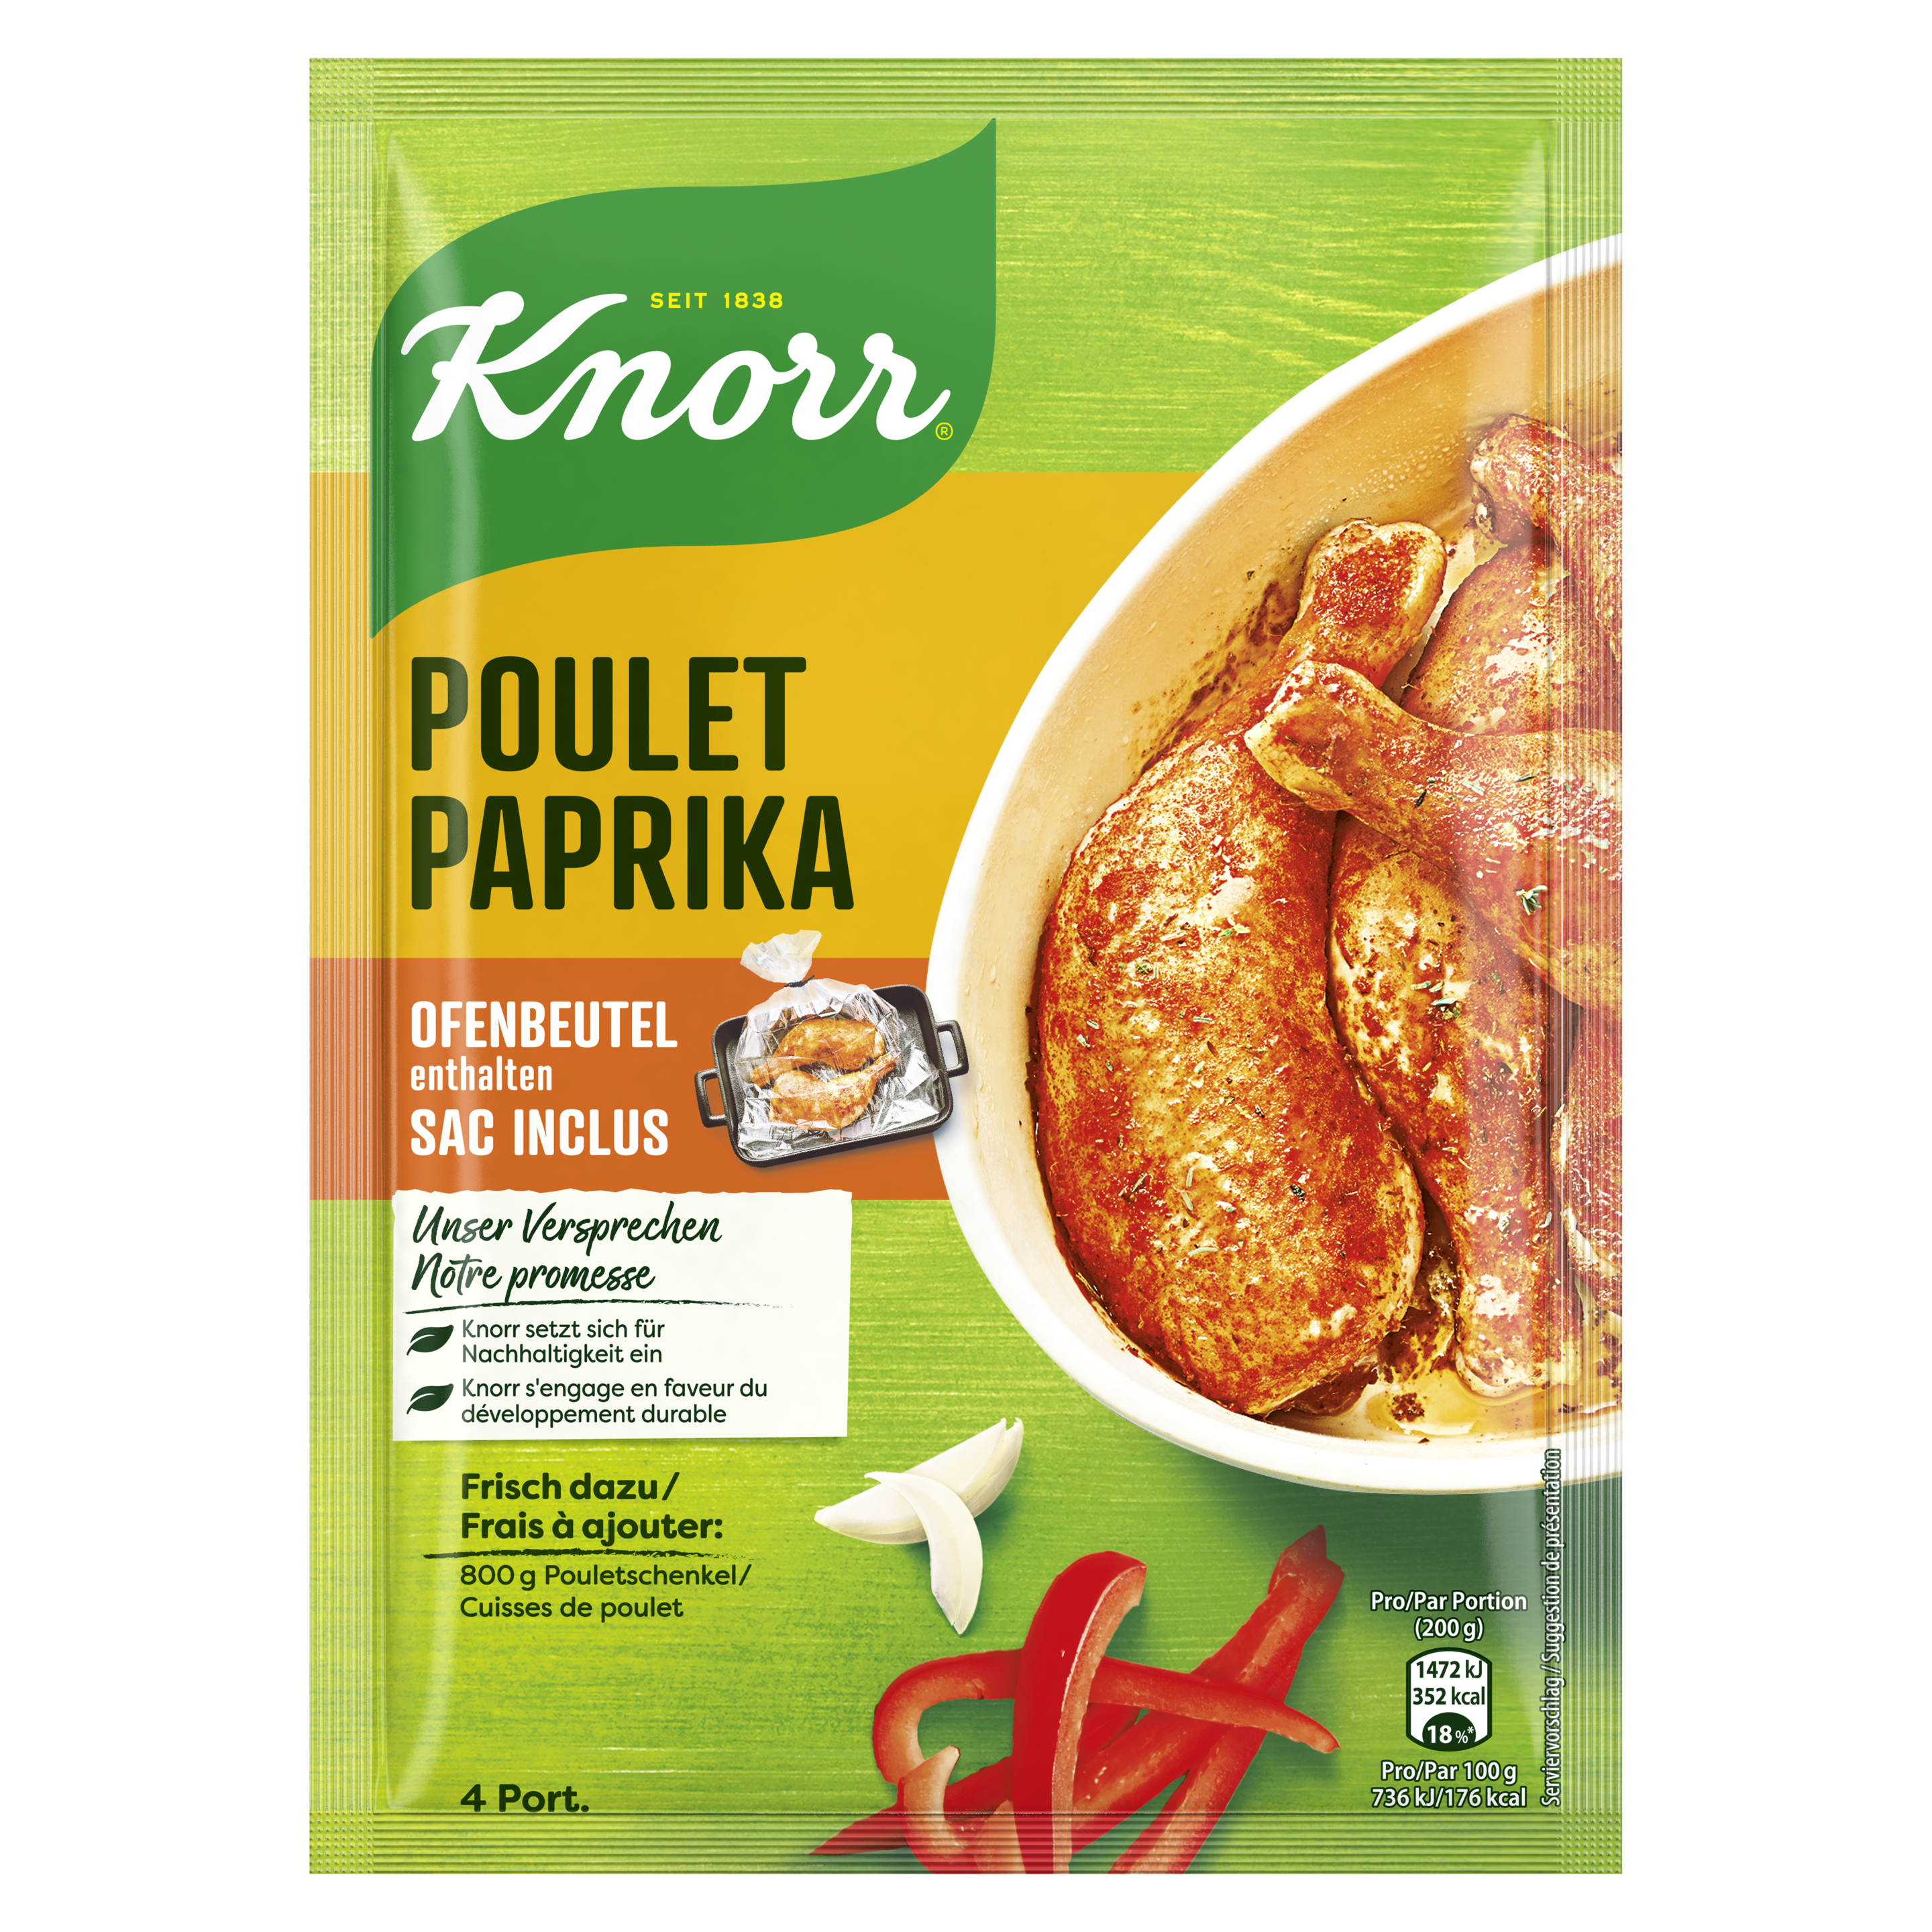 KNORR Poulet paprika (sac inclus) sachet 4 portions